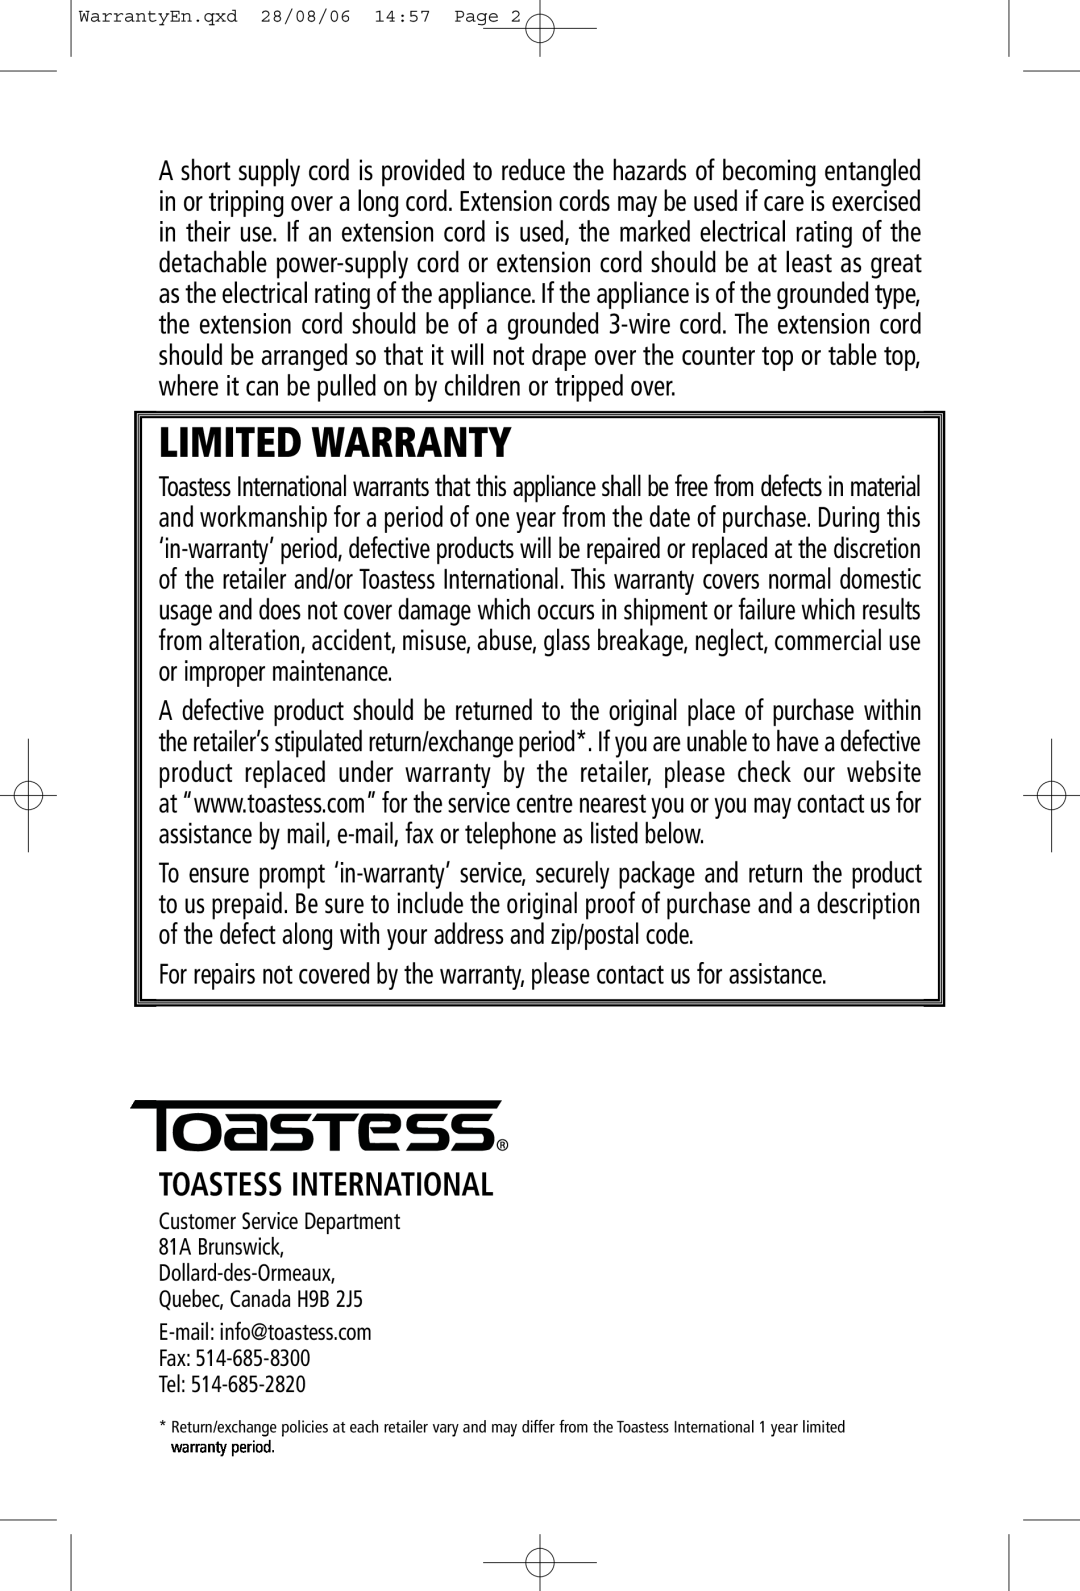 Toastess TFC-1 manual Toastess International, Limited Warranty 